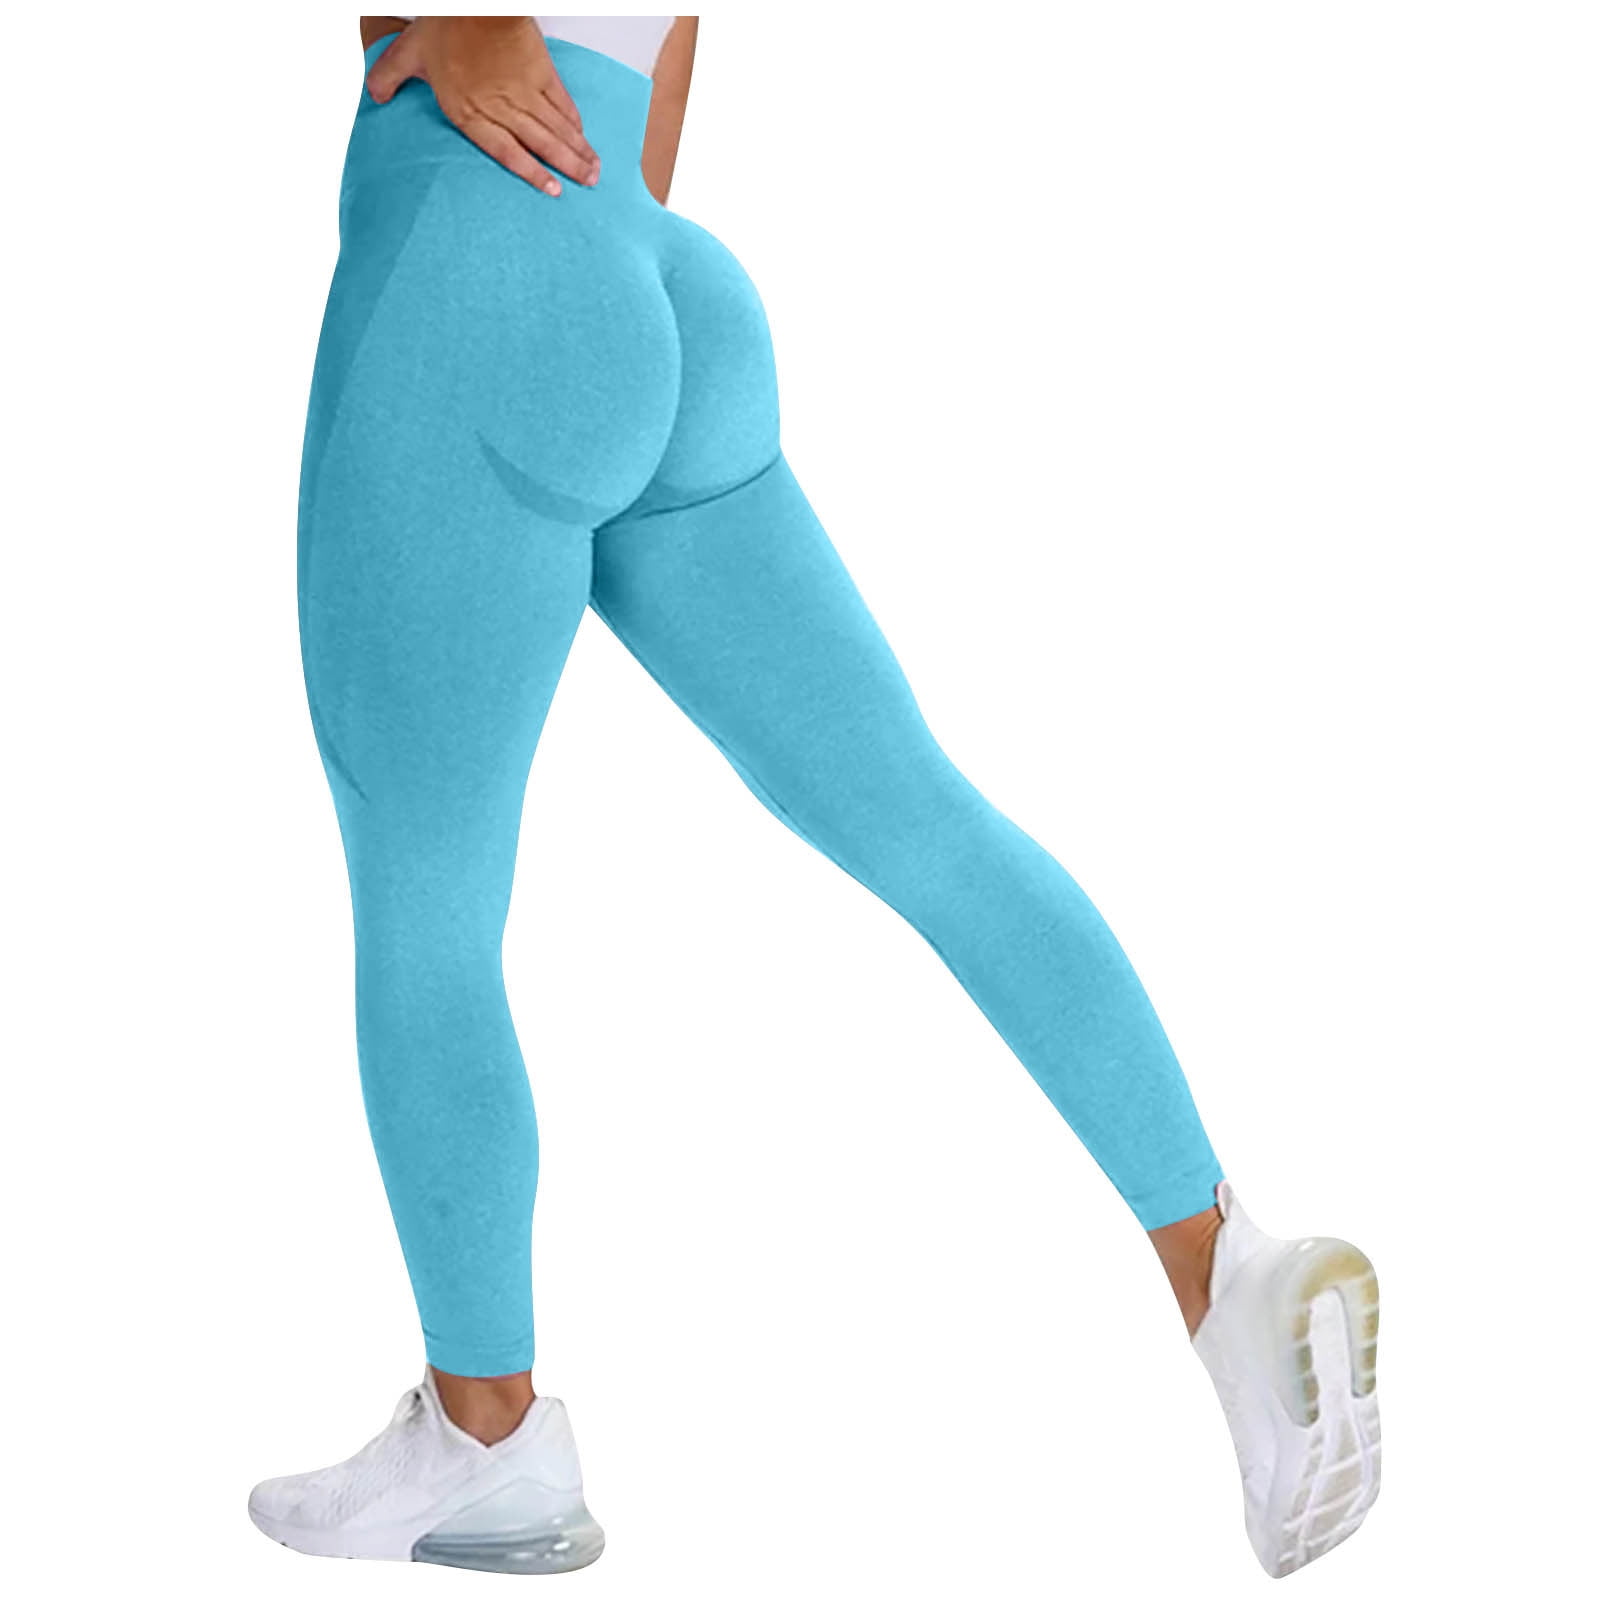 PEASKJP Cotton Leggings for Women Soft Lightweight Workout Leggings, Blue S